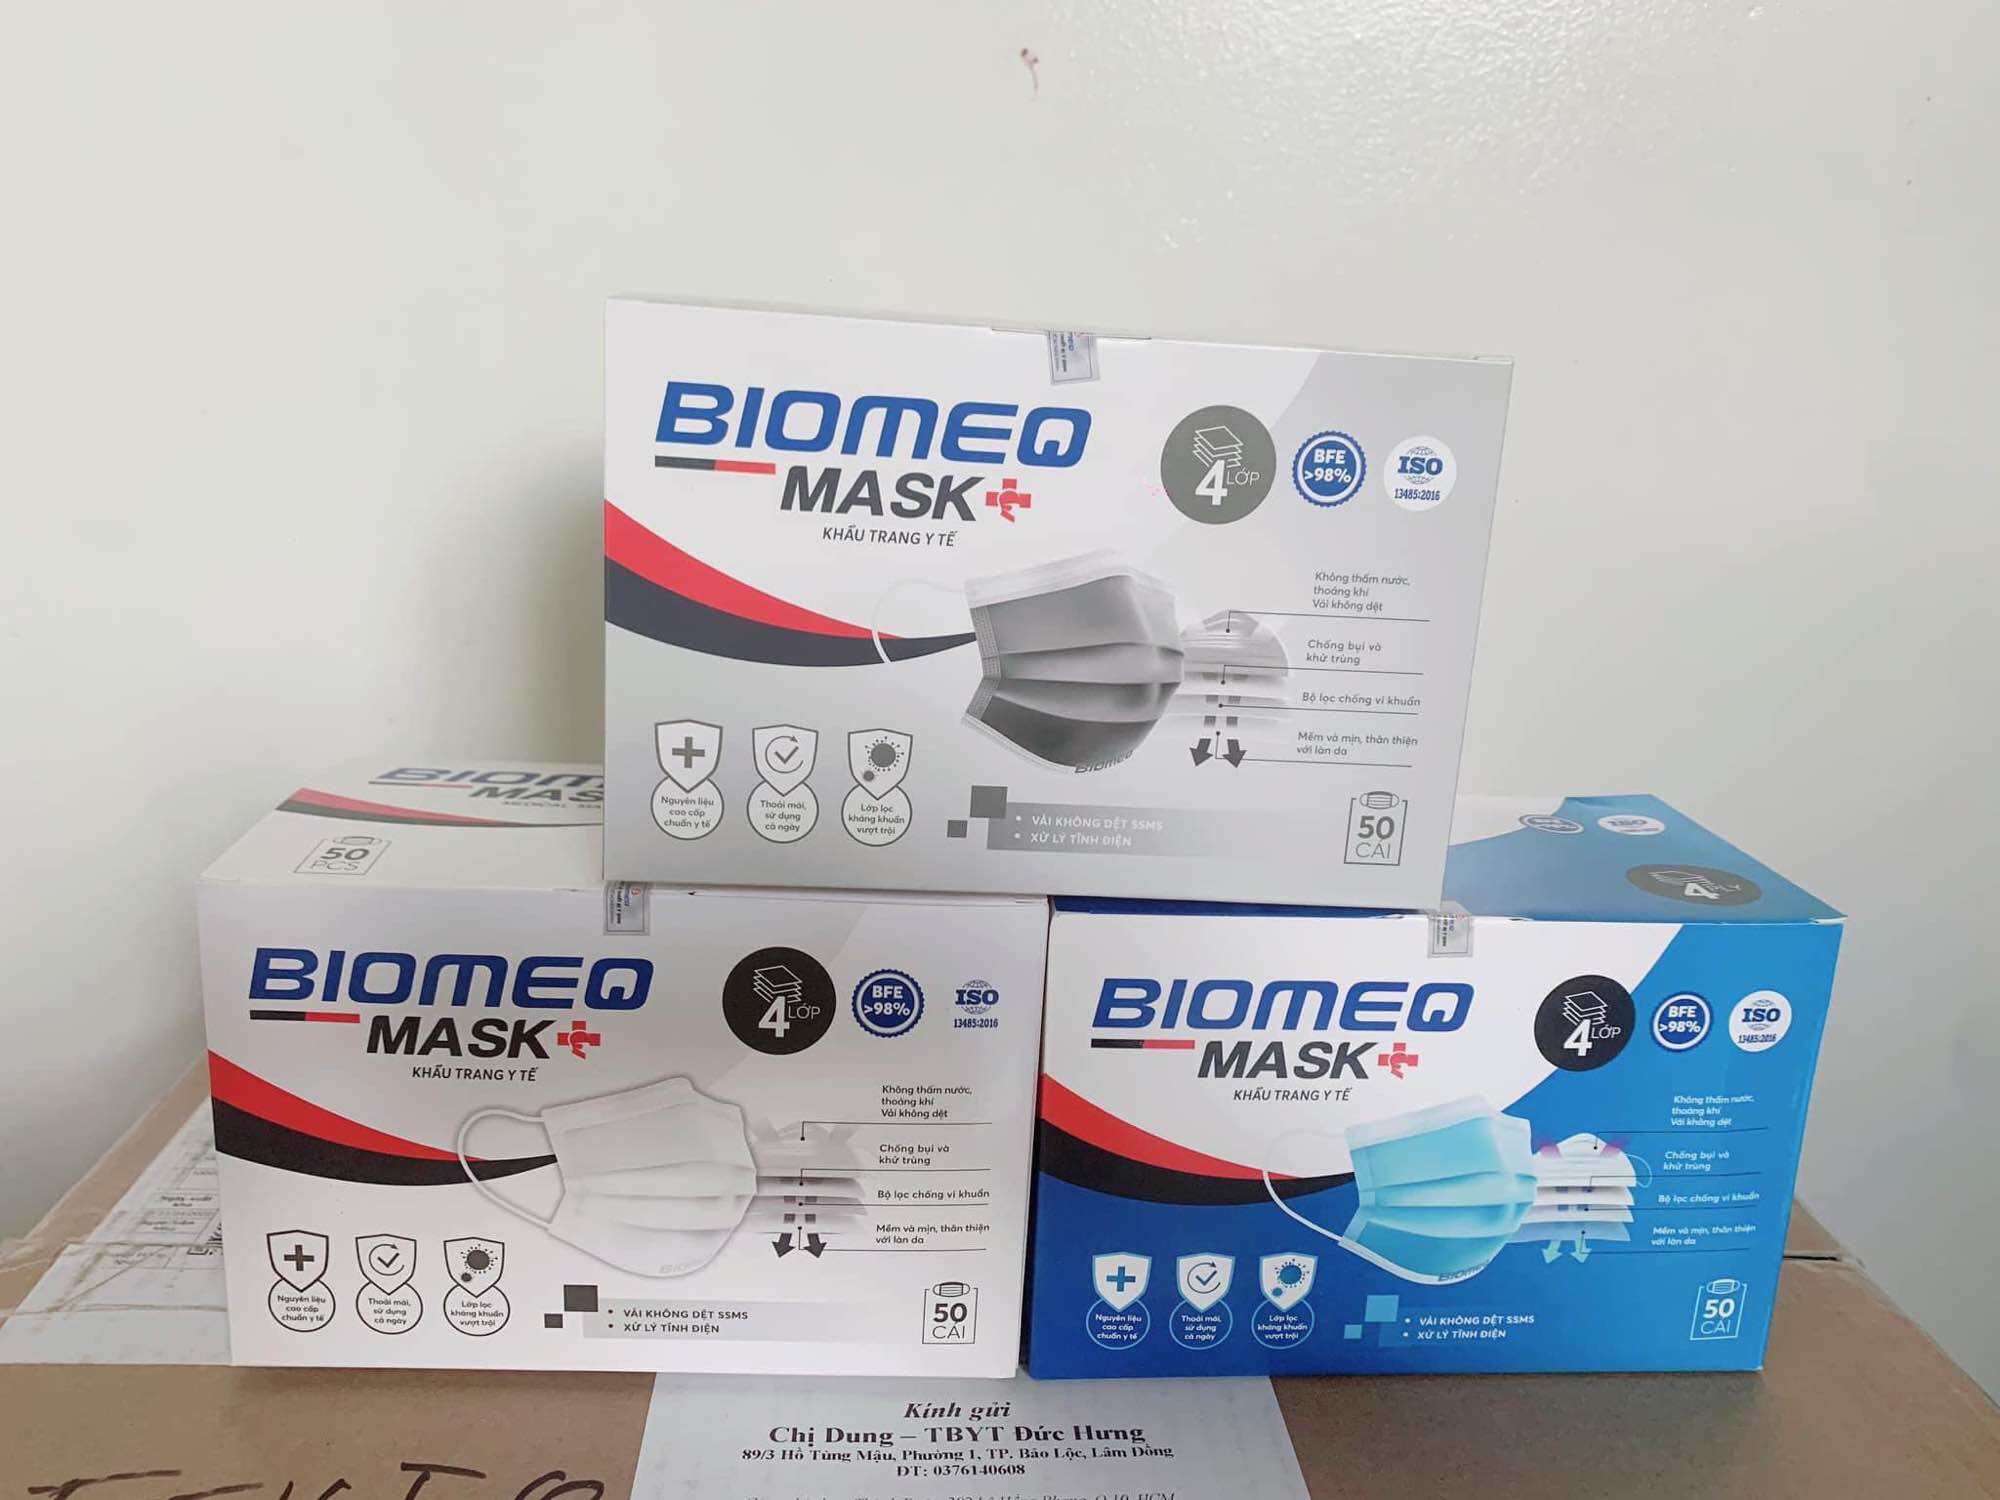 ❤️[HỘP 50 CÁI] KHẨU TRANG Y TẾ KHÁNG KHUẨN 4 LỚP BIOMEQ MASK Khẩu trang y tế Biomeq Mask 4 lớp kháng khuẩn